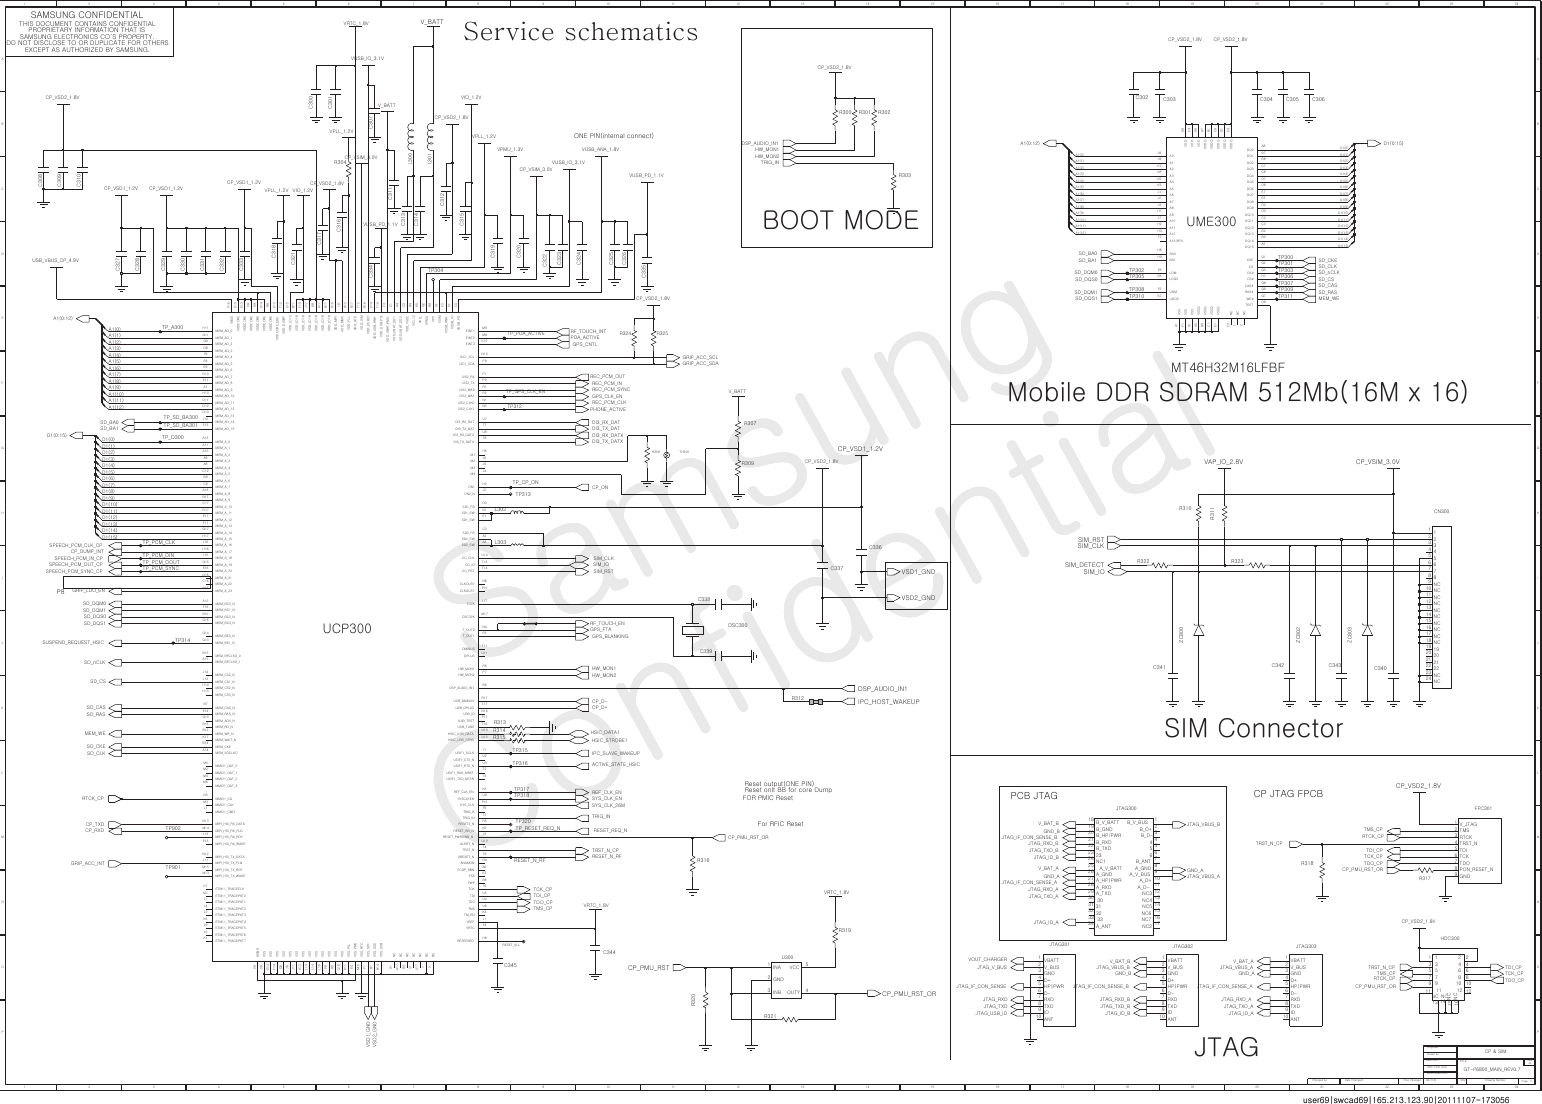 Page 3 of 12 - Samsung GT-P6800 - Schematics. Www.s-manuals.com. Service Schematics